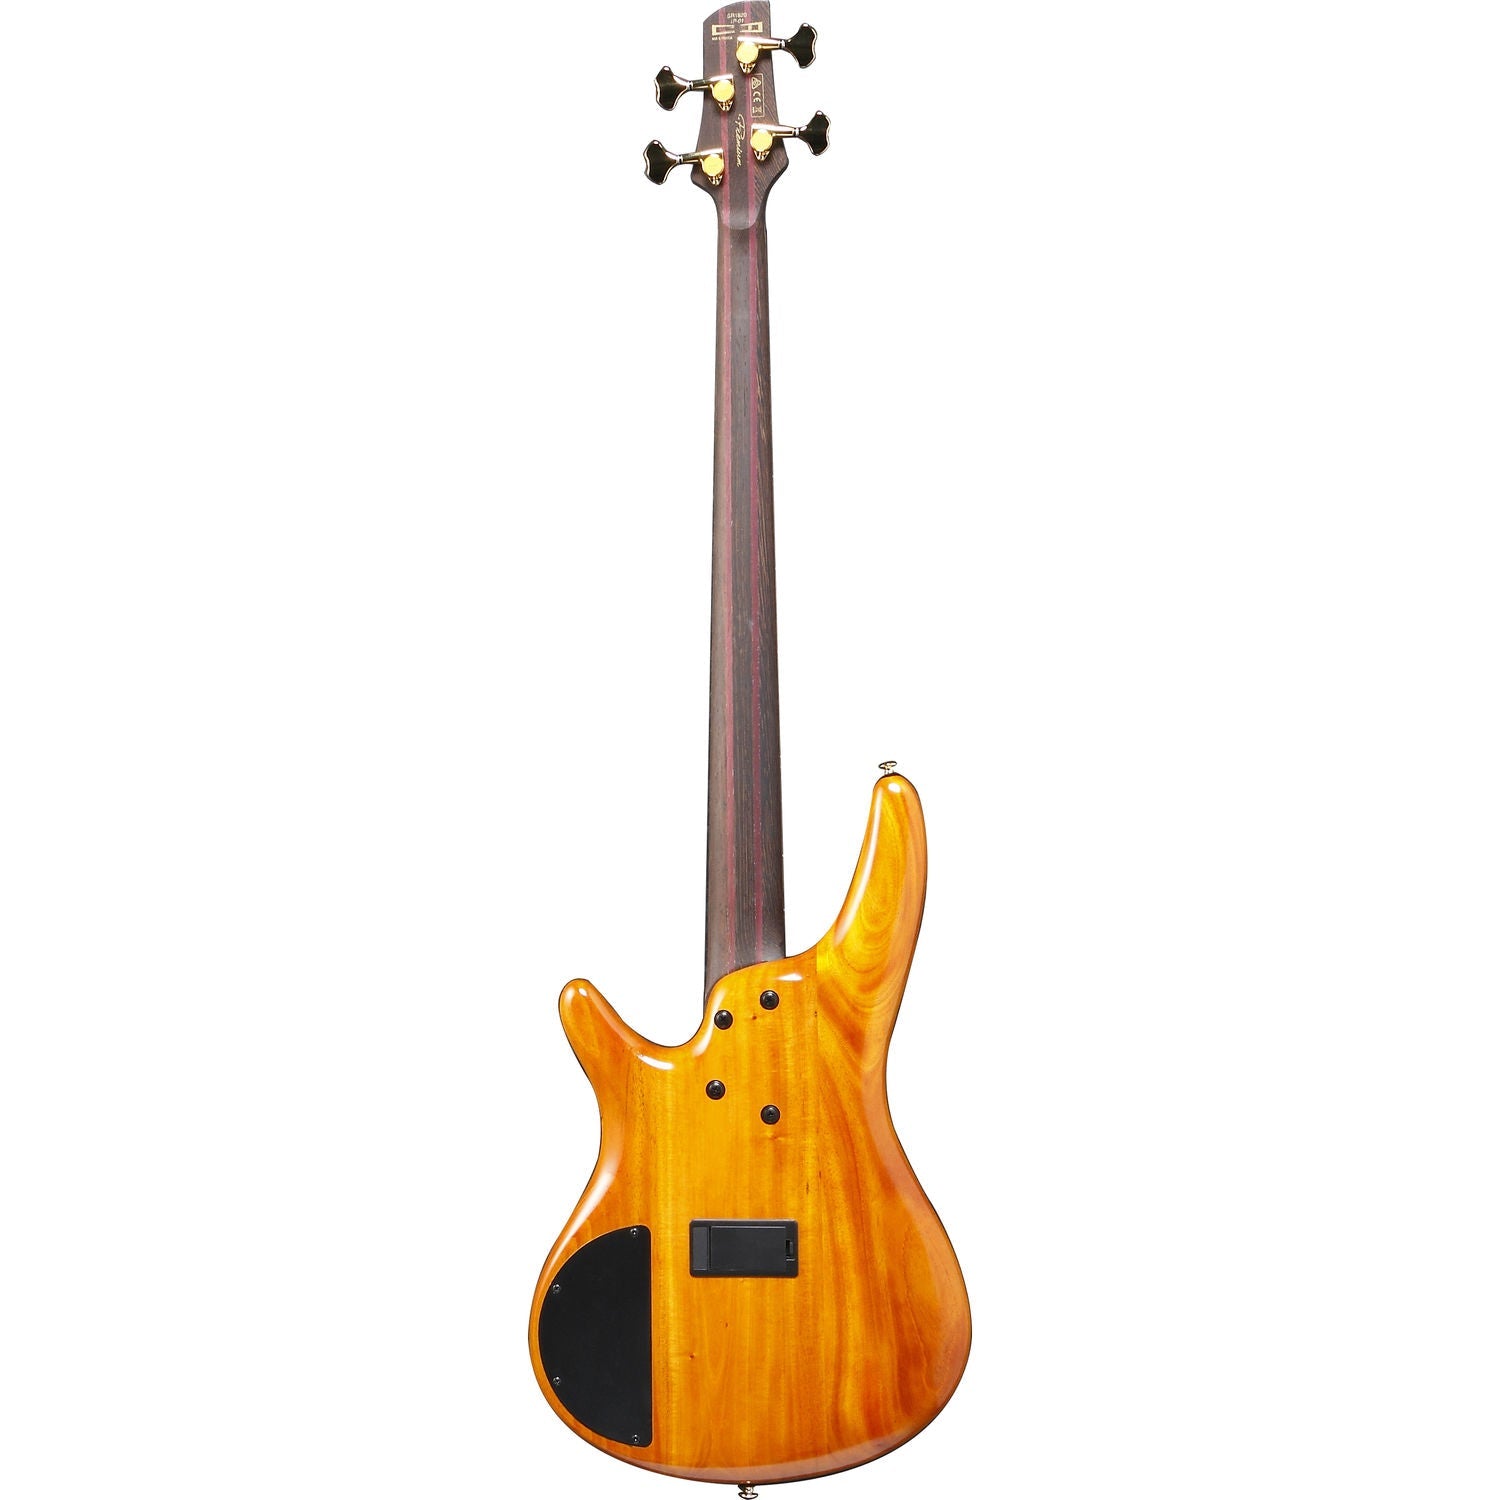 Đàn Guitar Bass Ibanez SR1820